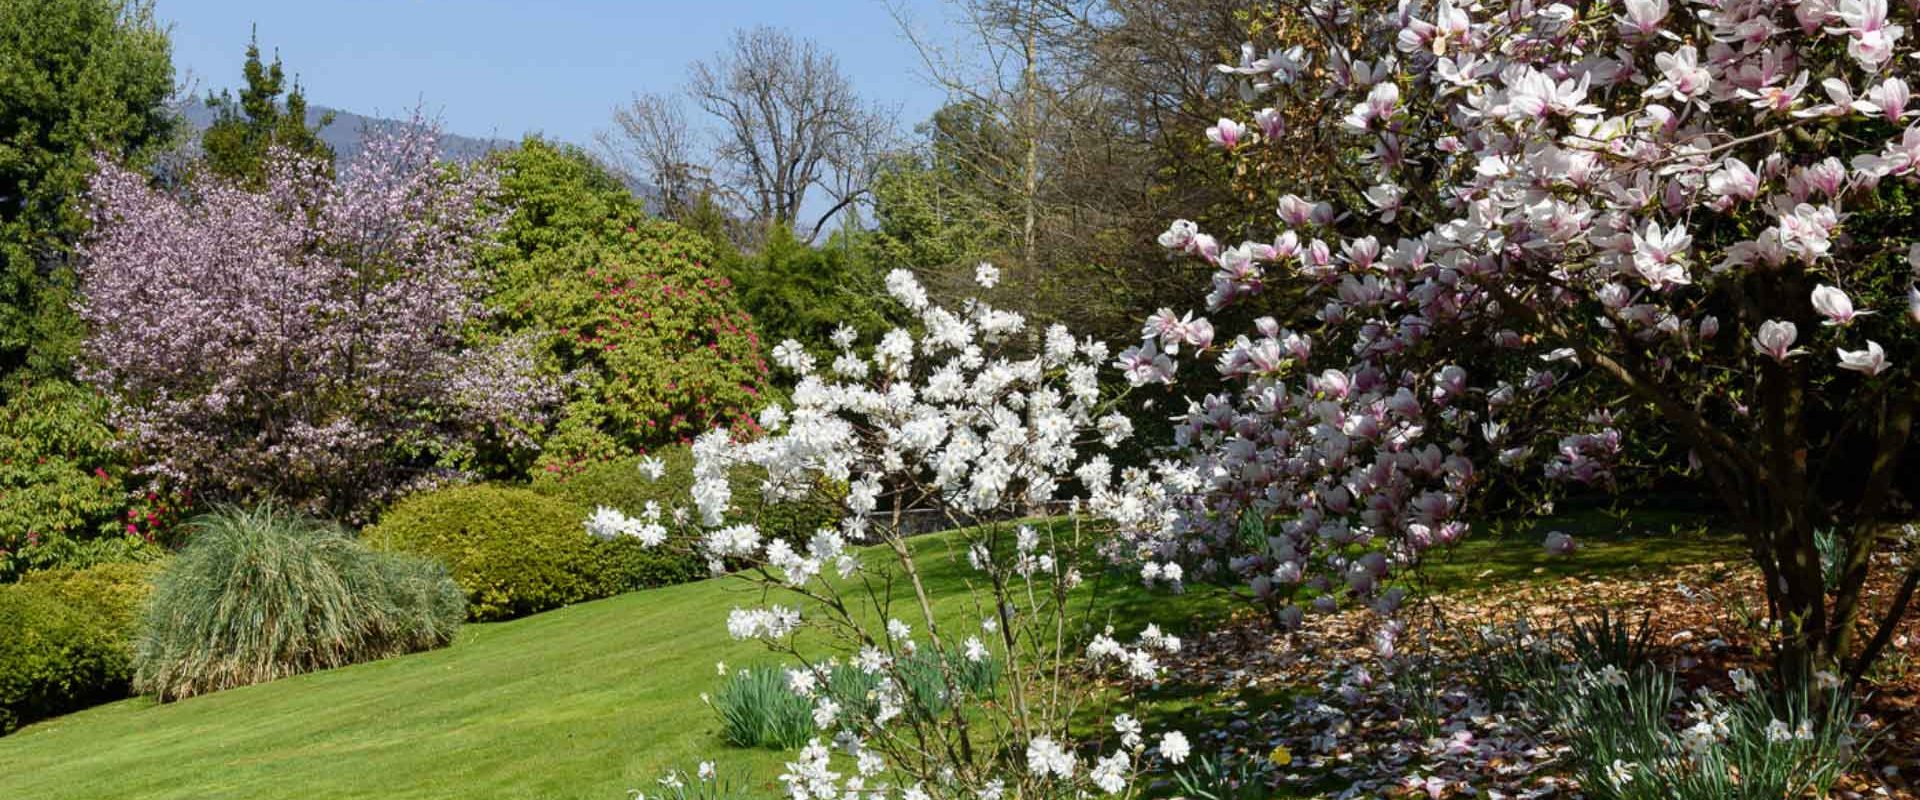 Aprile dolce fiorire: sull’Isola Madre sbocciano magnolie, mimose e protee